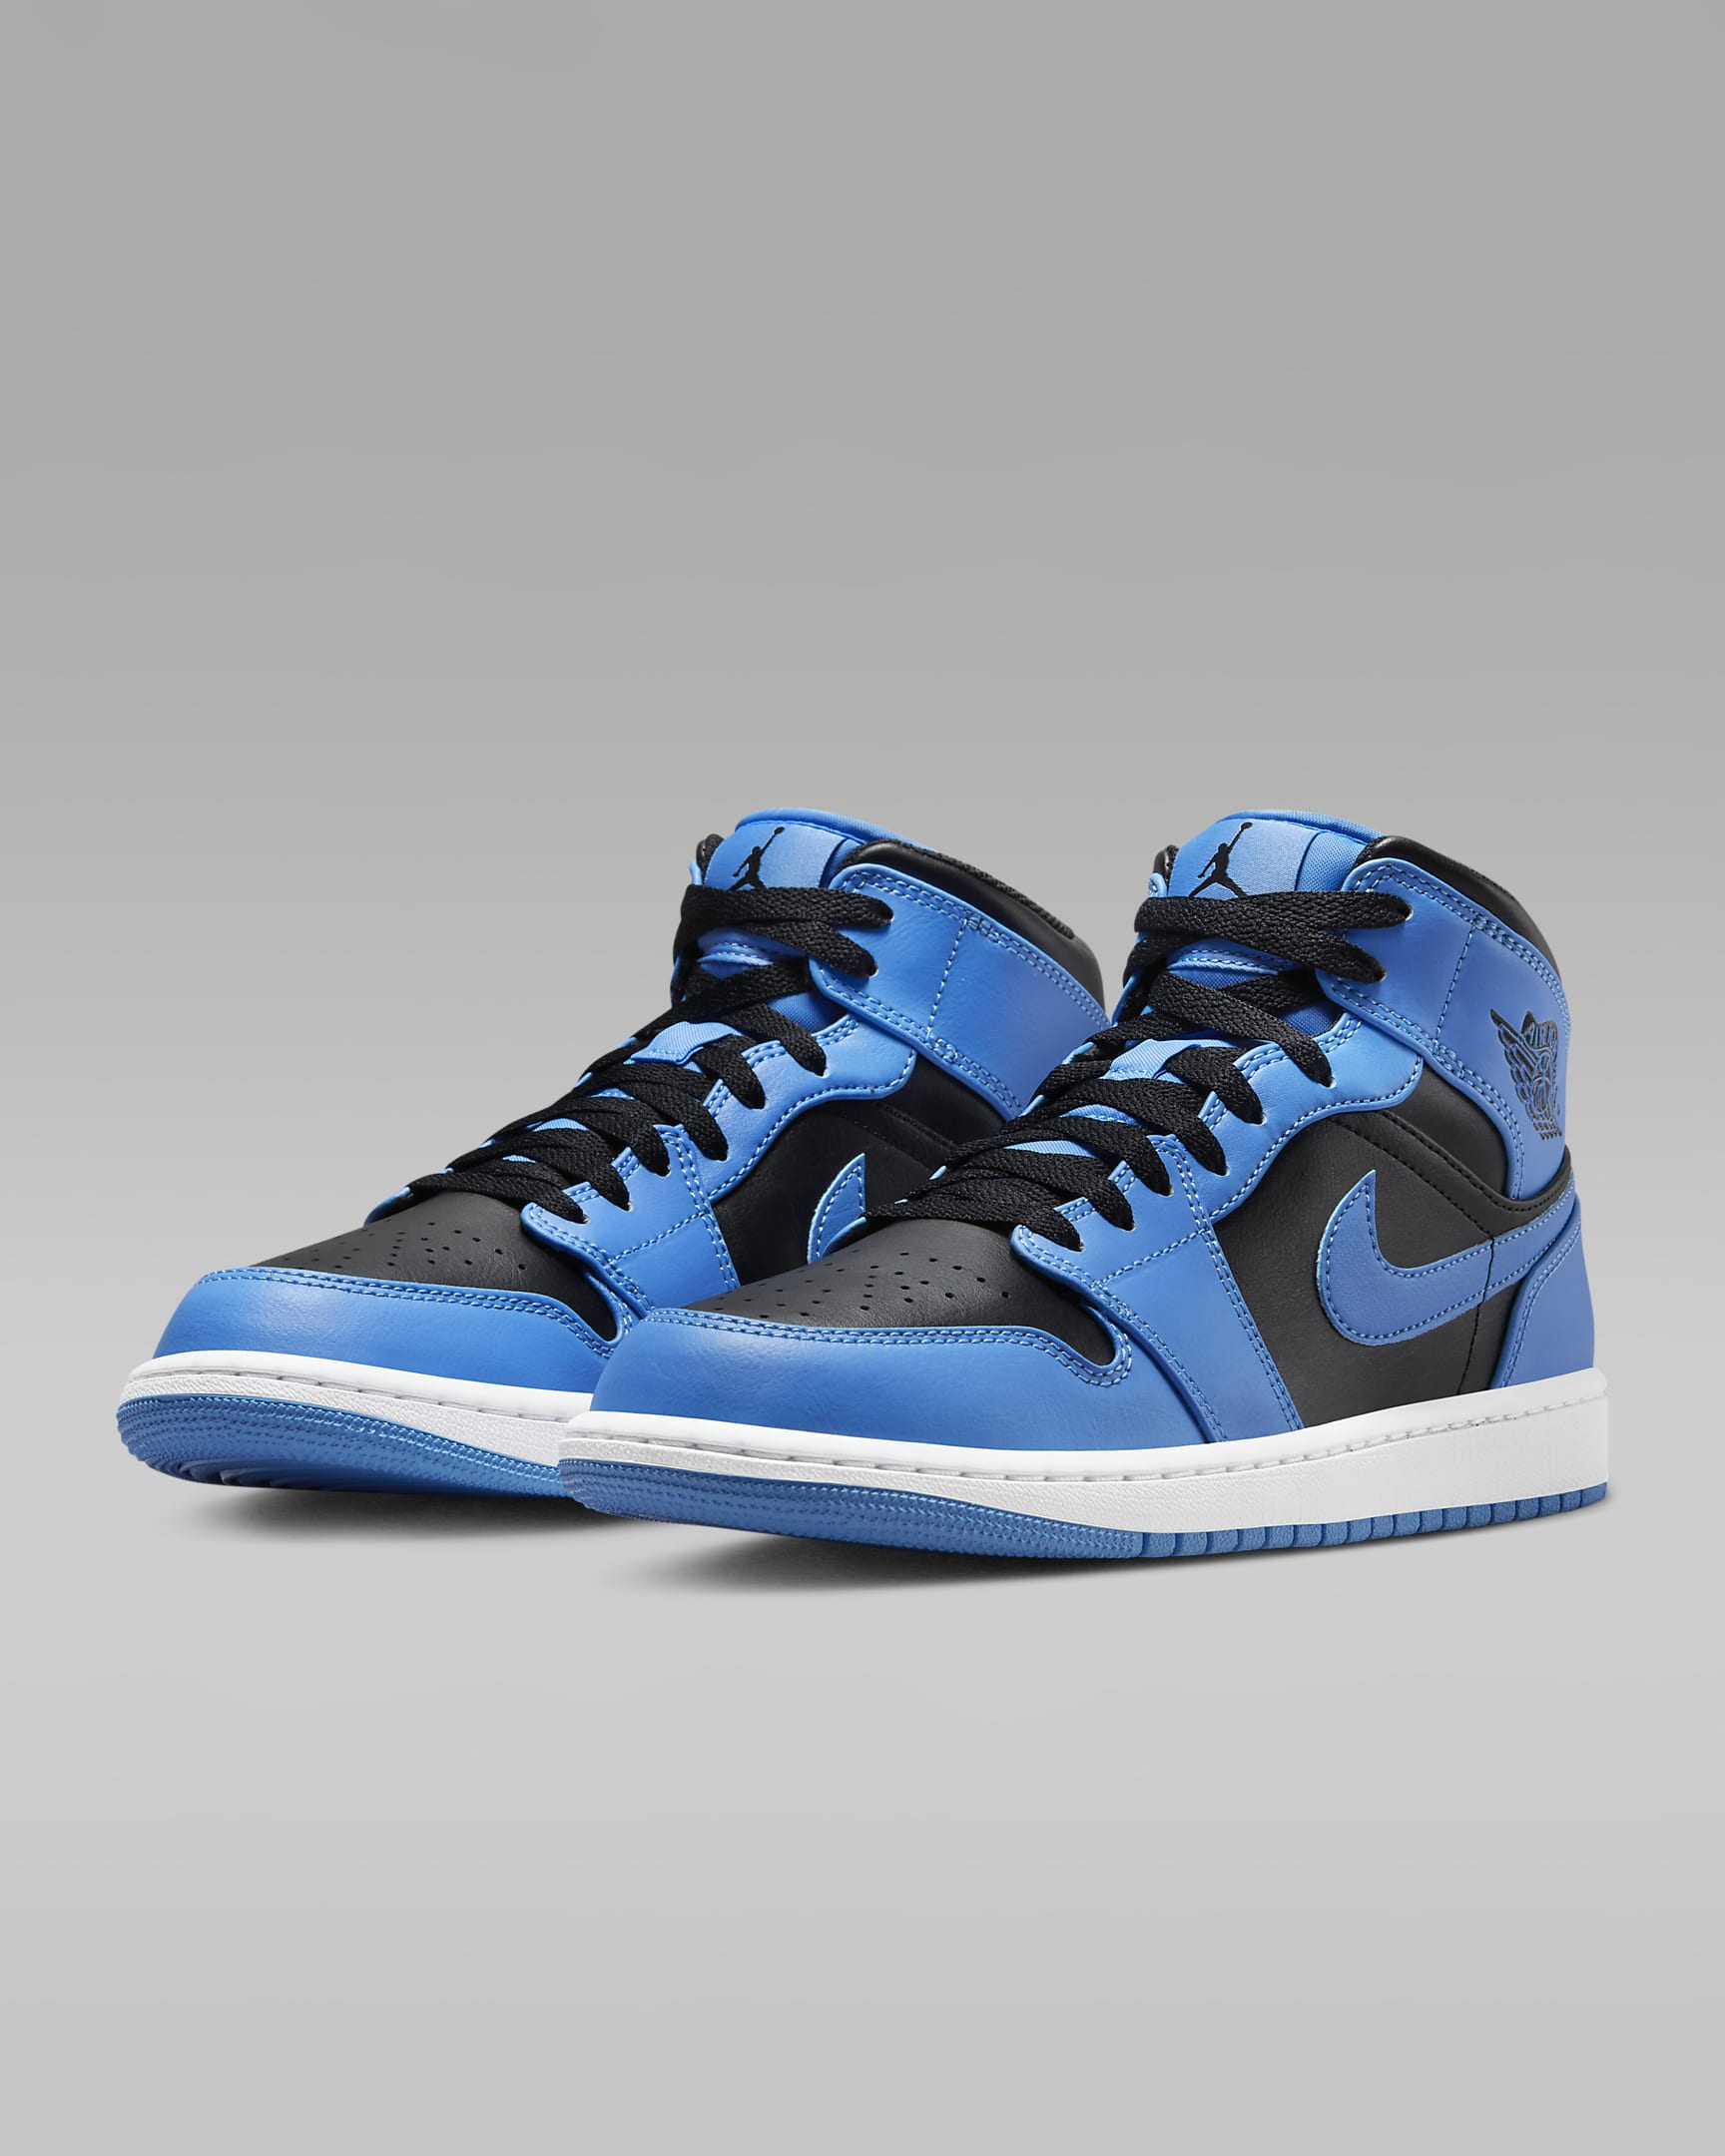 Nike Men's Air Jordan 1 Mid Shoes (University Blue/White/Black)